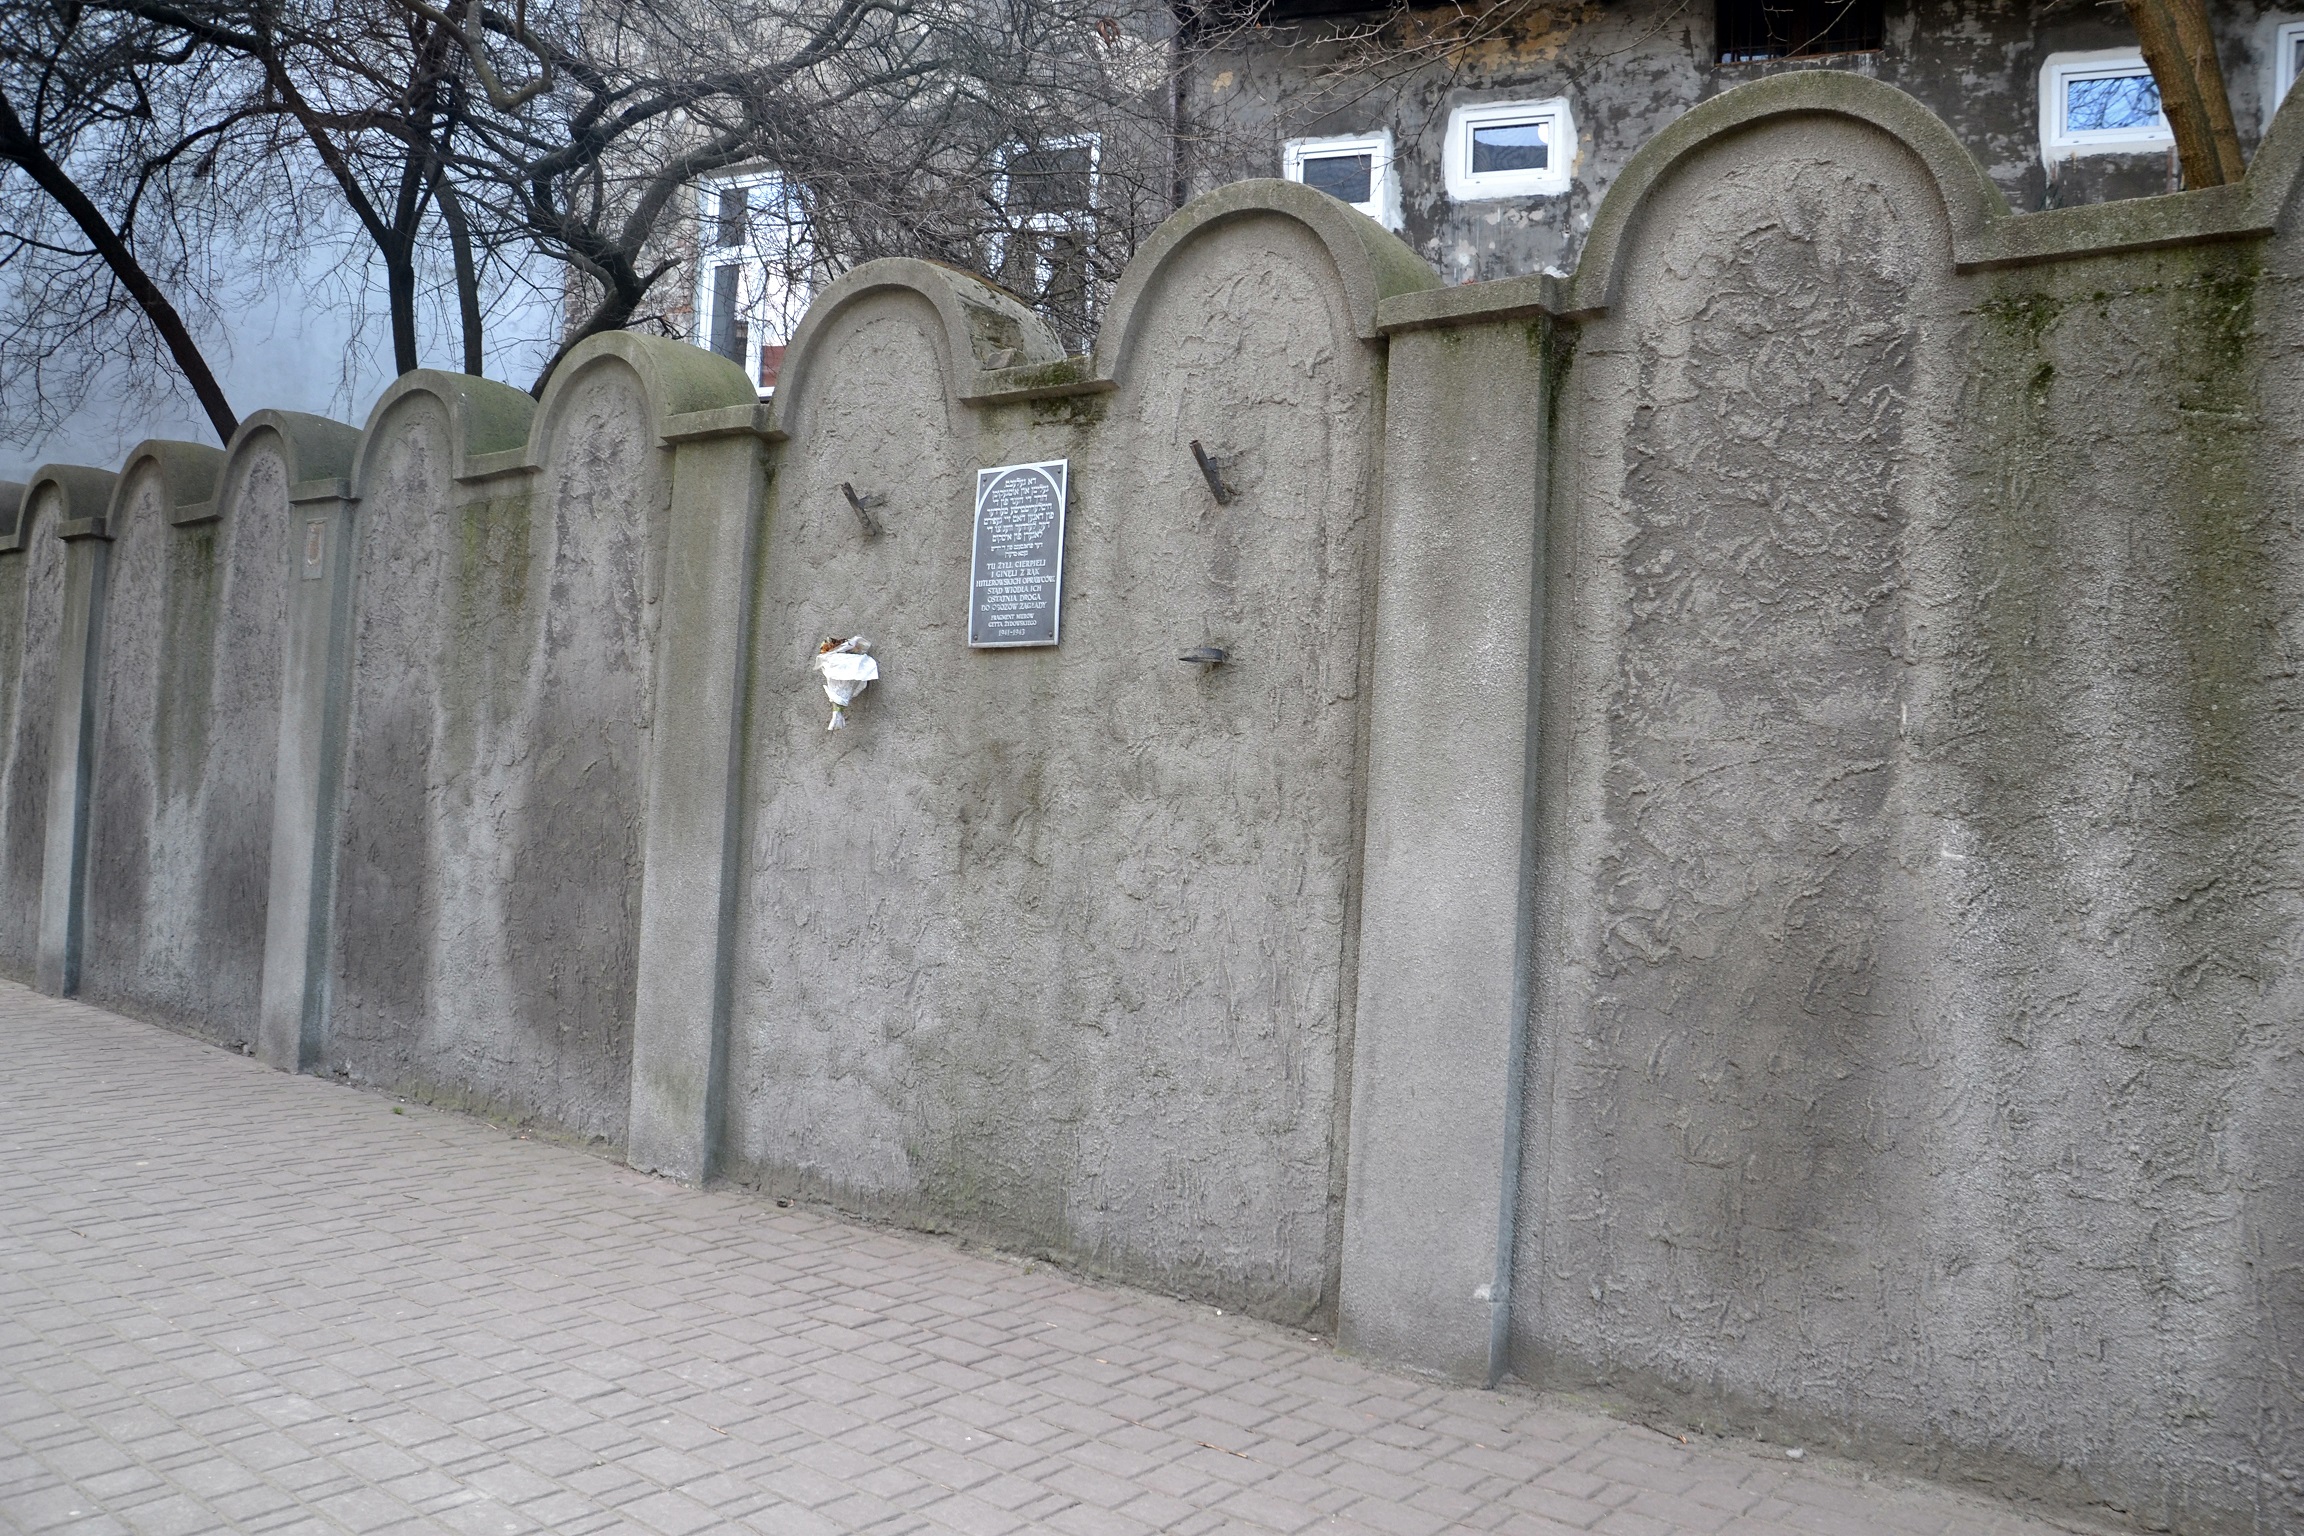 Foto: Ghetto Wall Fragments - Muro Gueto de Cracovia. - Cracovia (Lesser Poland Voivodeship), Polonia